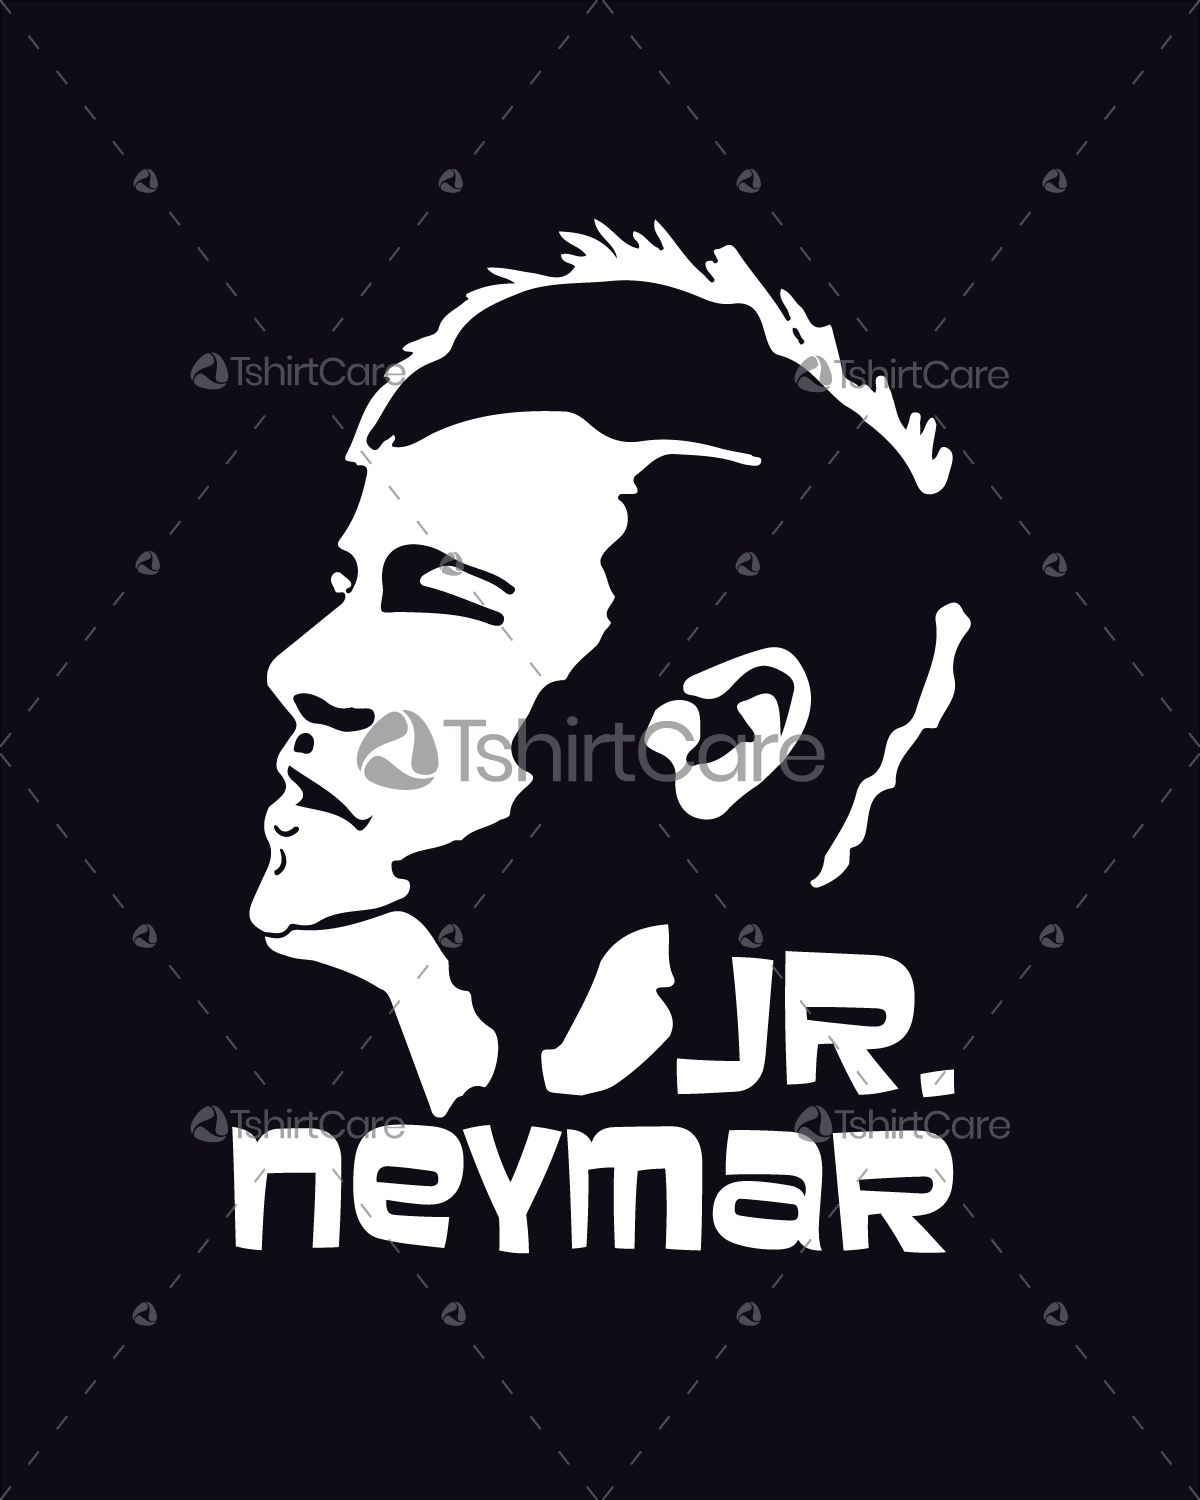 Neymar Logo - Jr neymar face T shirt Design Brazil World Cup Football player Tee & Jersey Design for Men, Women & Kid